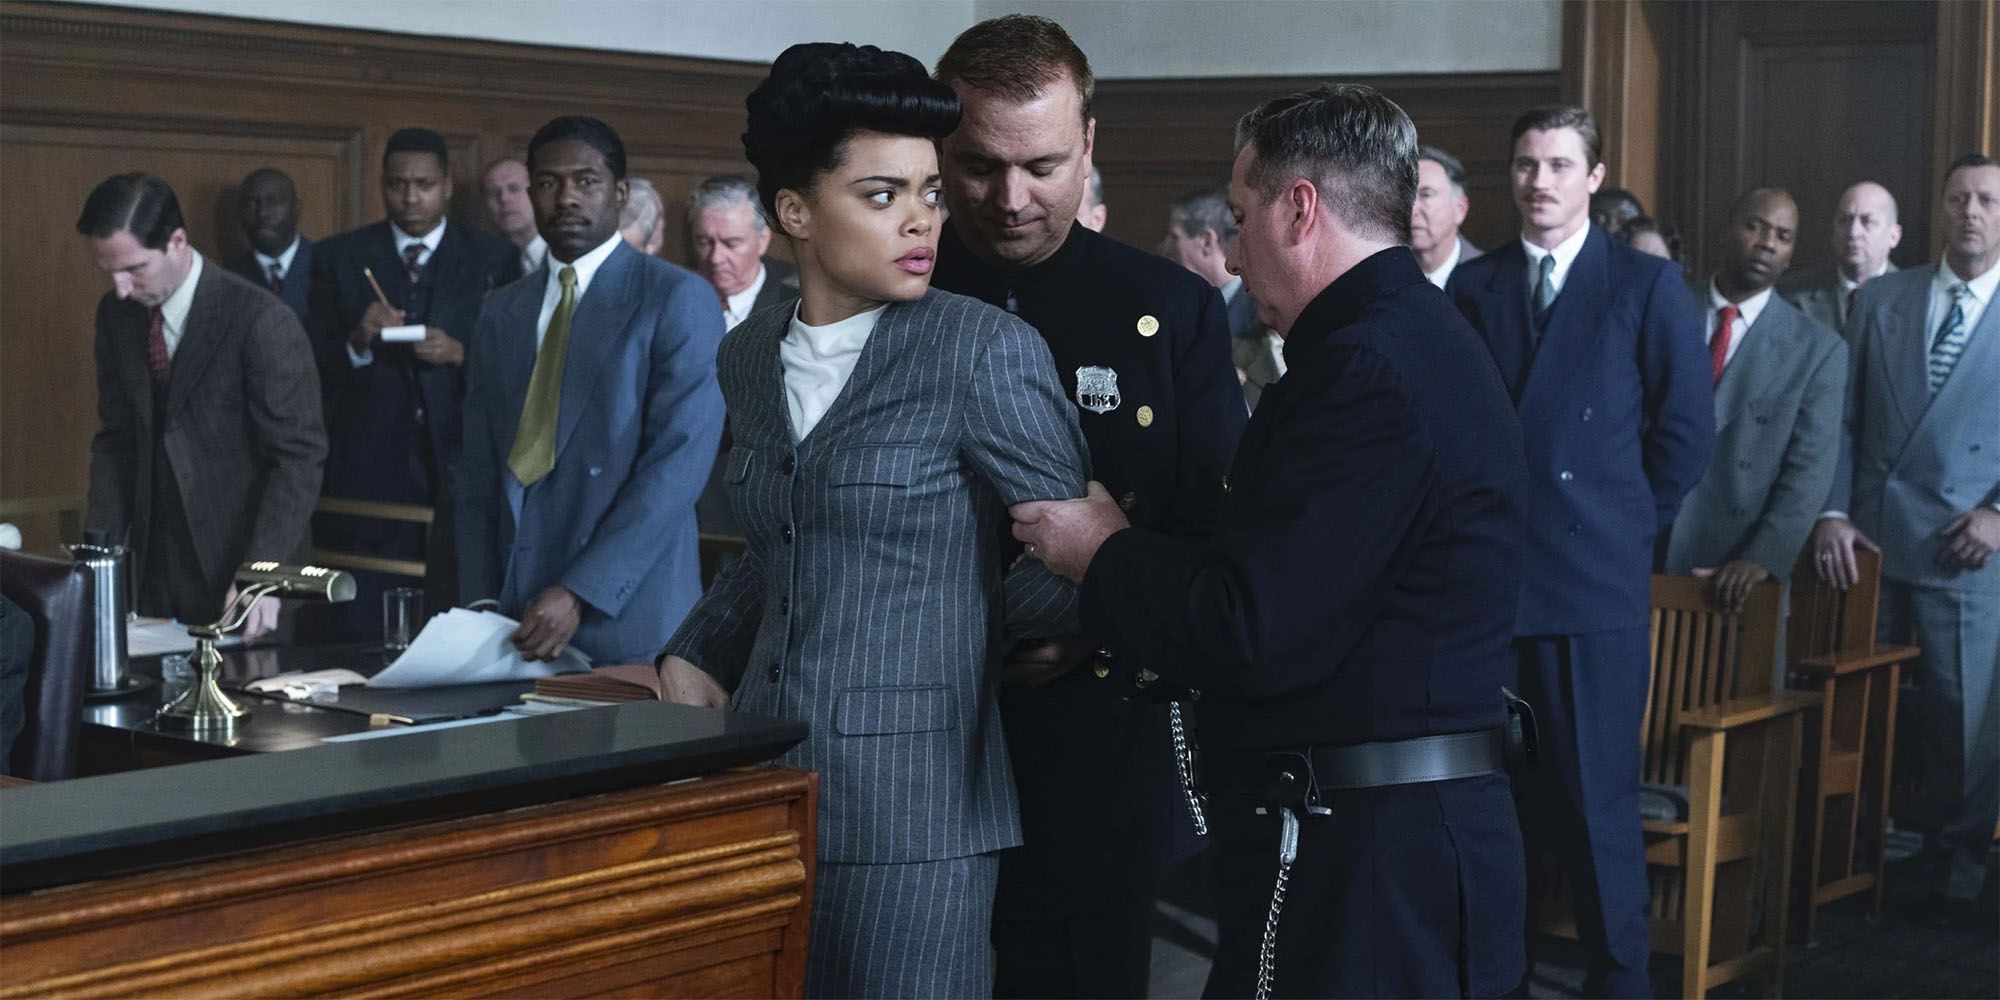 Estados Unidos vs.Billie Holiday Trailer confirma la fecha de lanzamiento de febrero